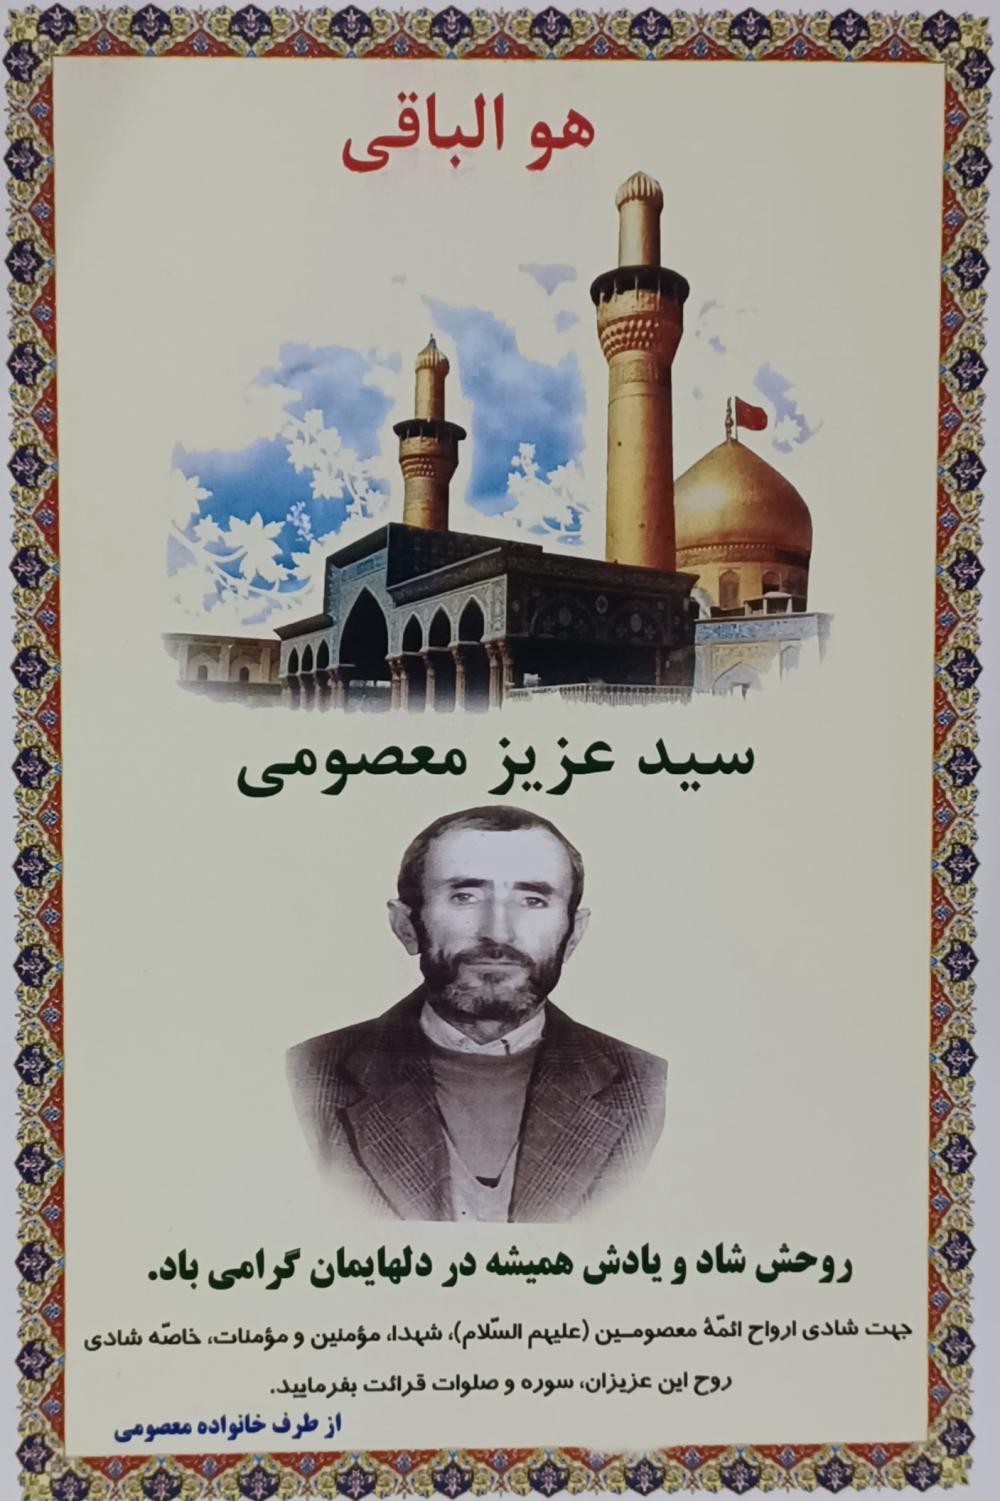 یادبود شادروان سید عزیز معصومی